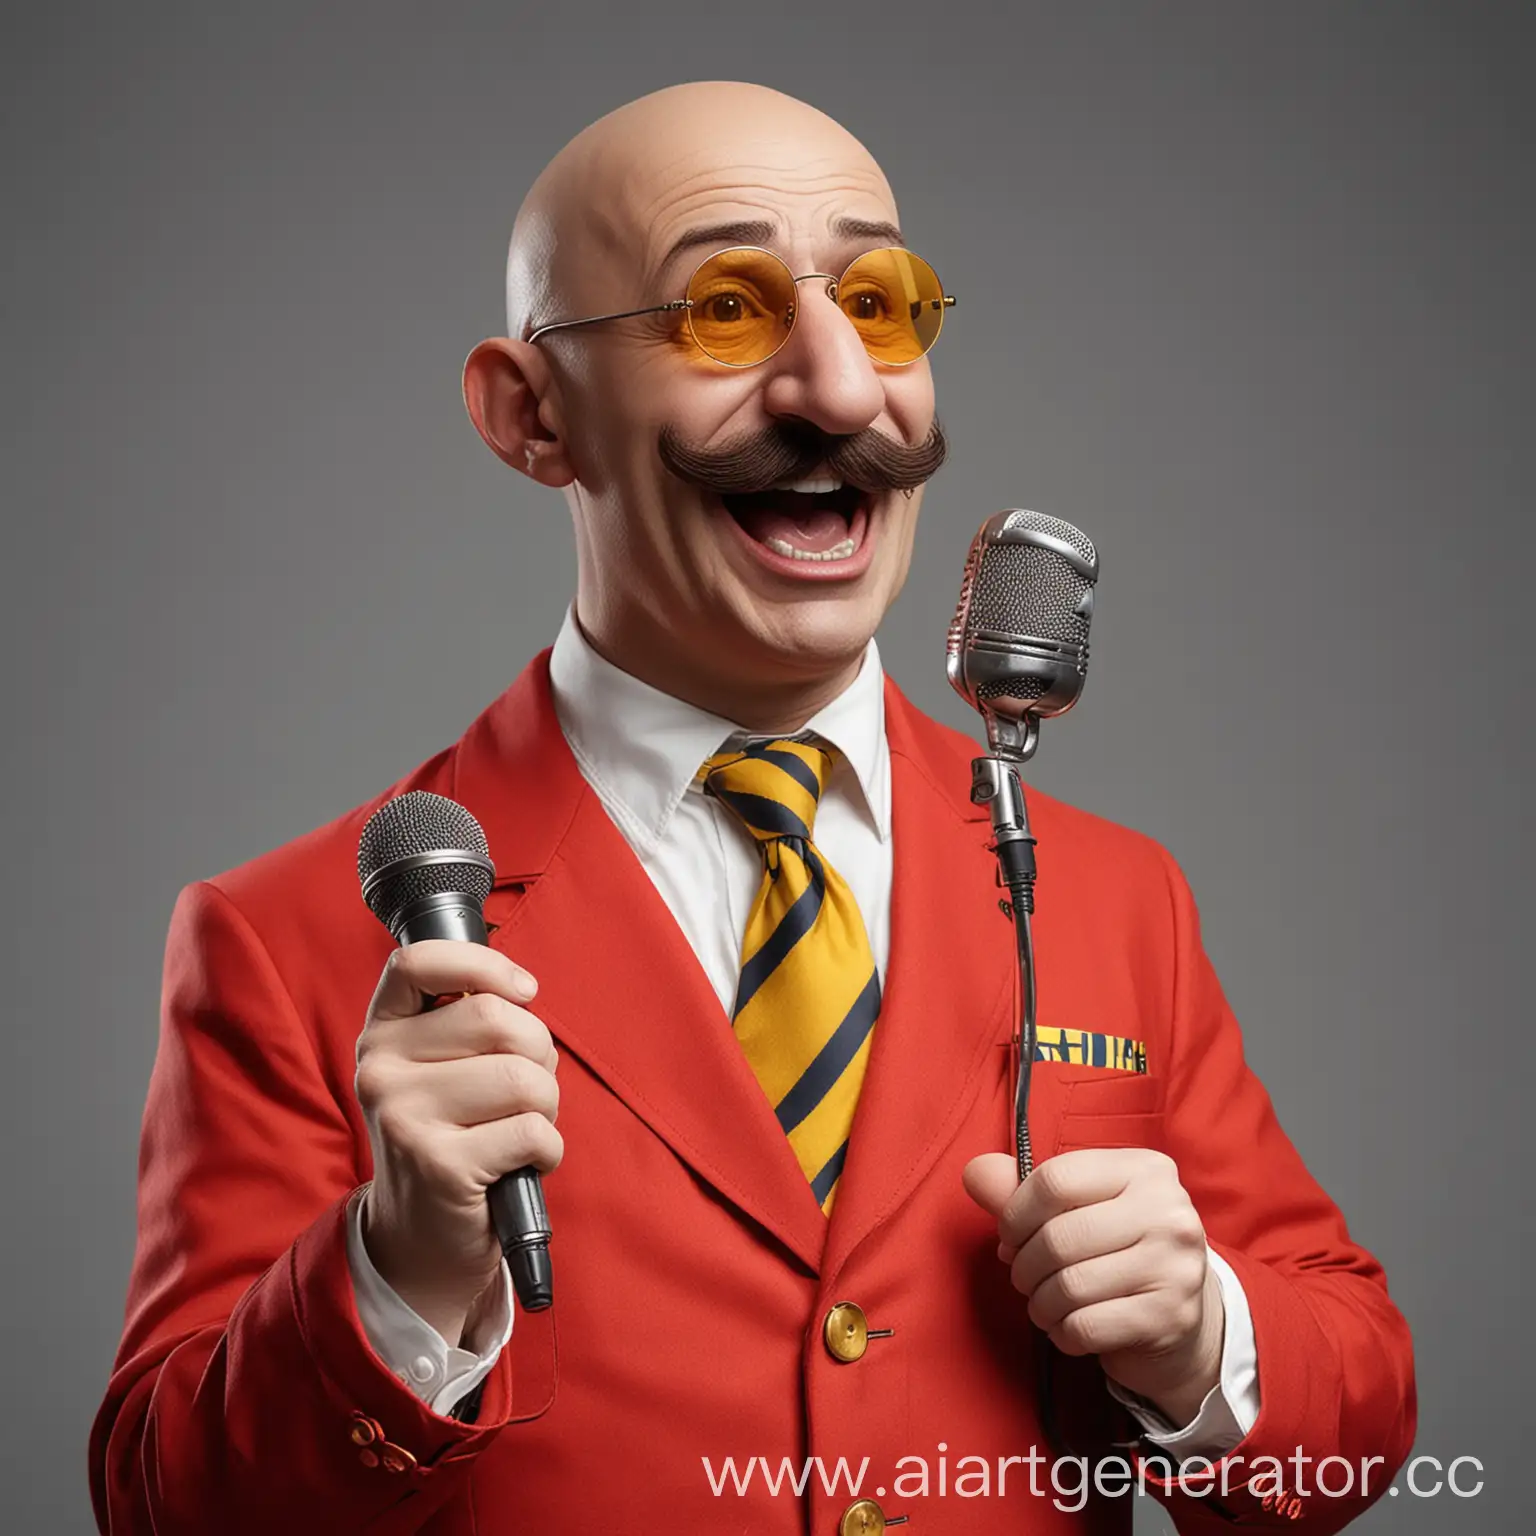 Лысый Доктор Эггман в красно-желтом костюме с огромными коричнивыми усами и в темно-синих очках поёт в микрофон "оооооооо да!"